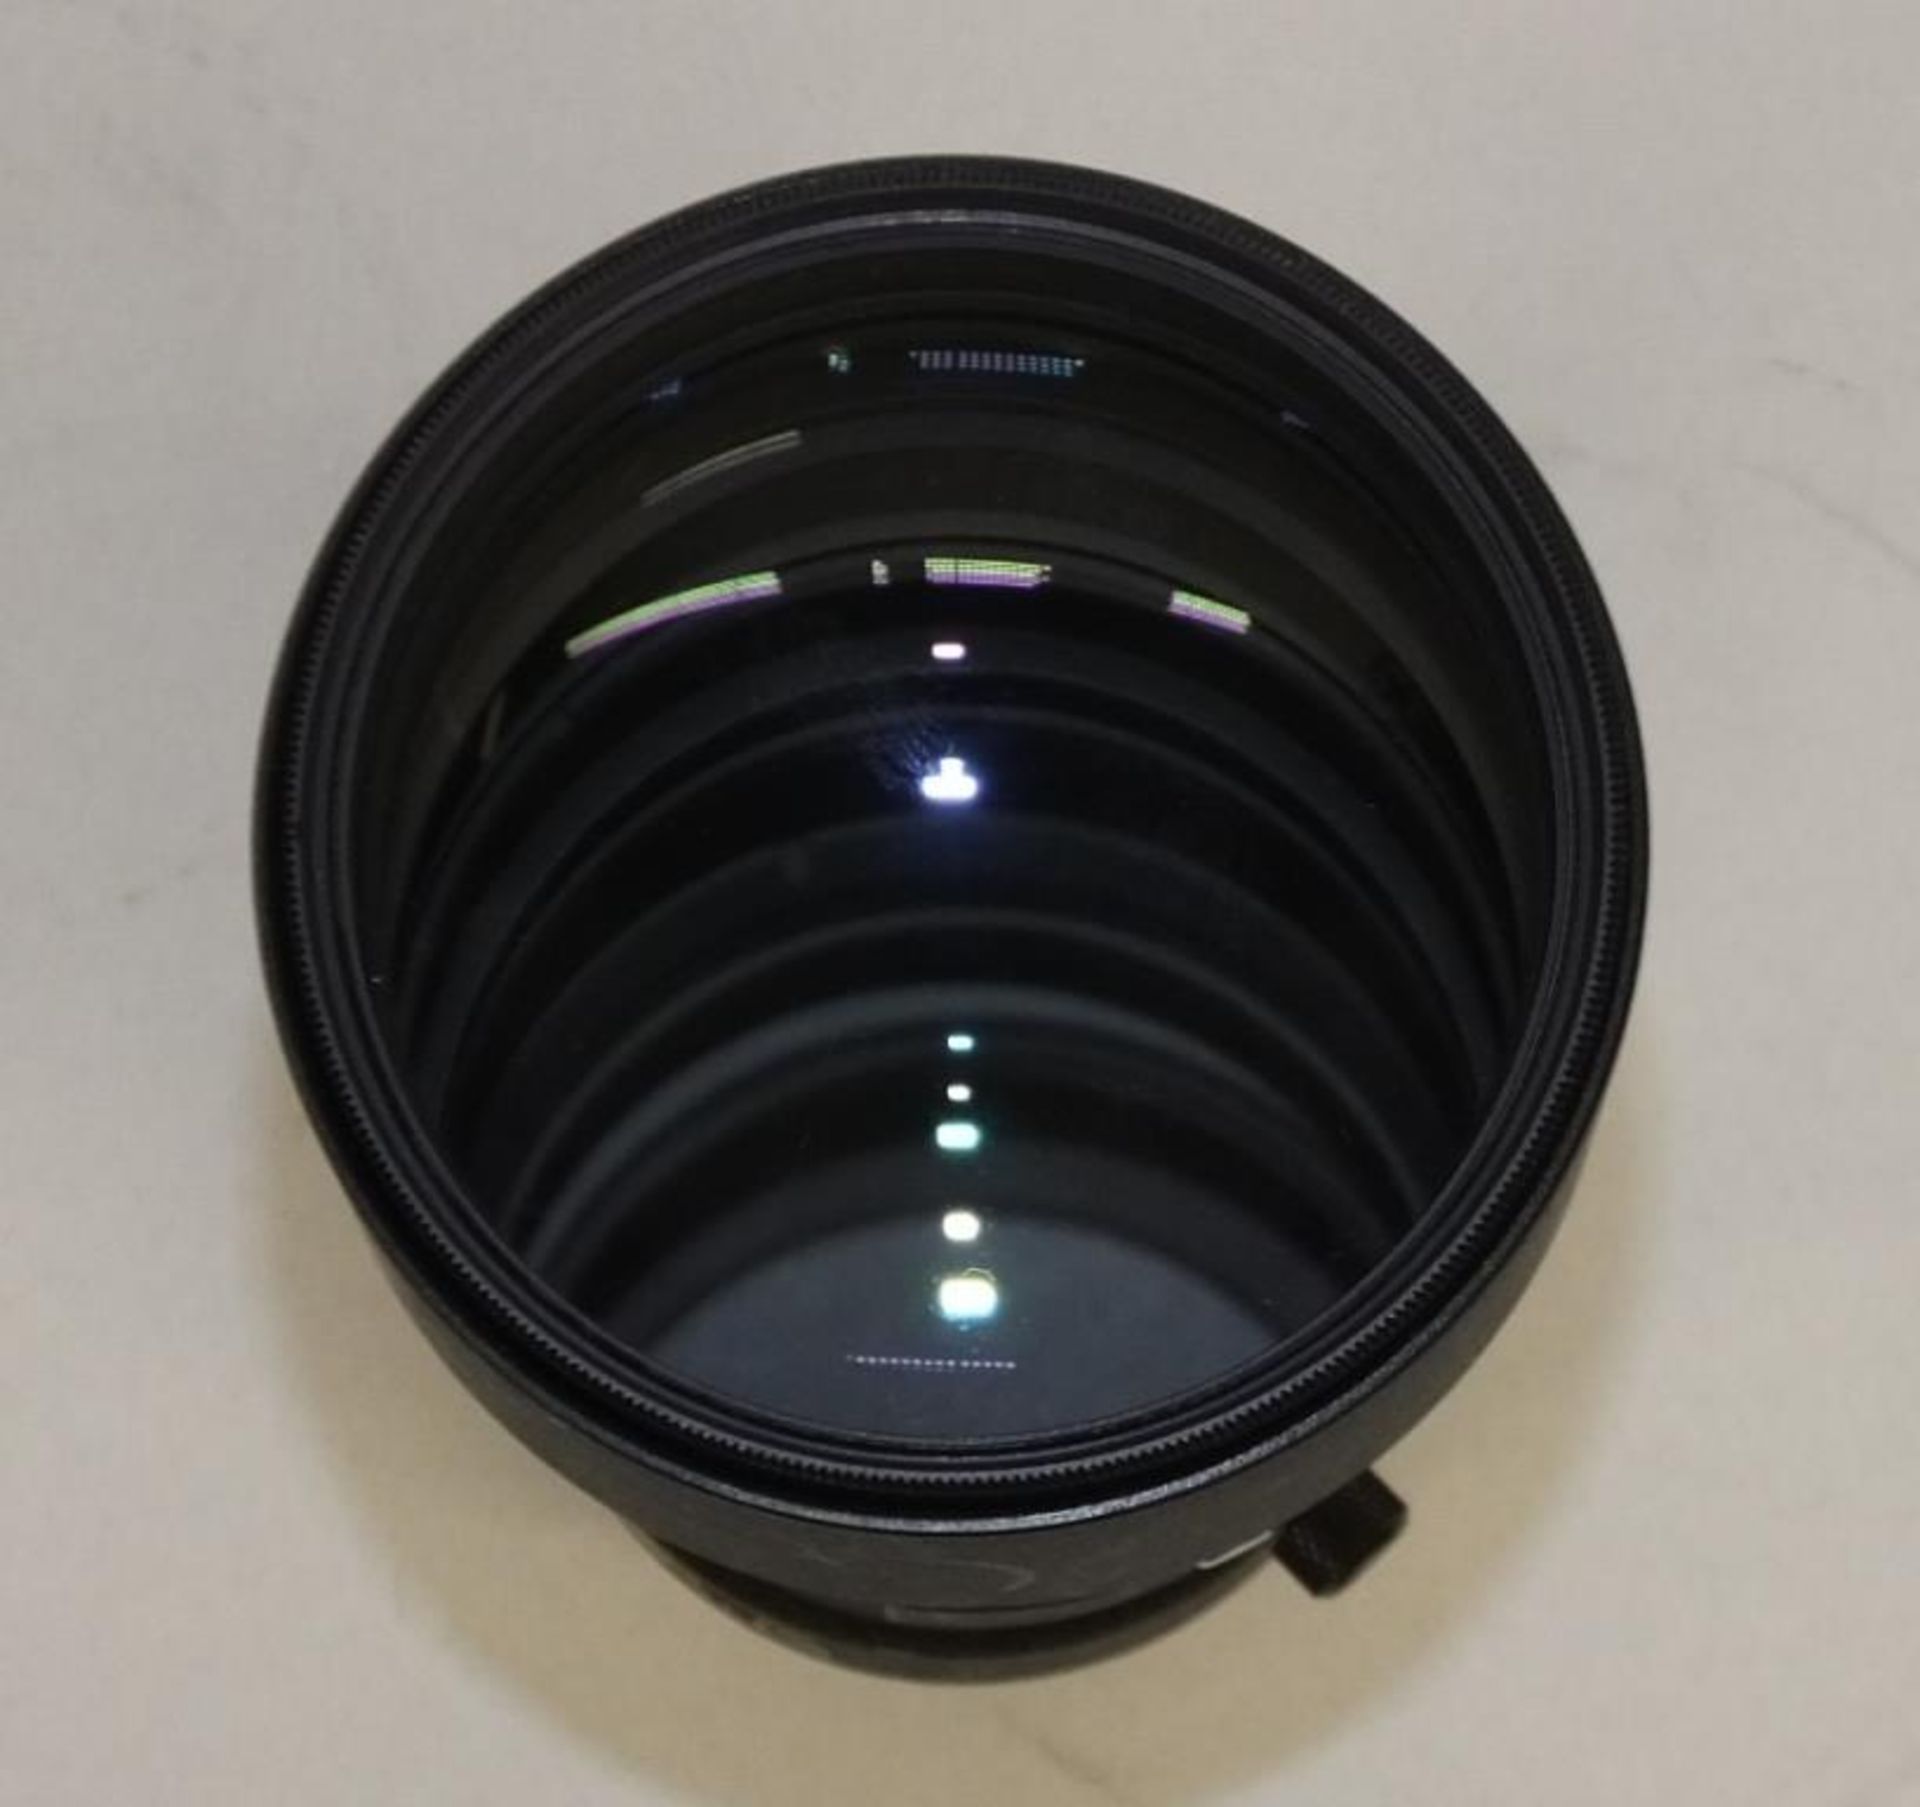 Nikon ED AF Nikkor 300mm 1:4 Lens with Nikon L37c 82mm Filter and Nikon CL-42 Case - Image 5 of 8